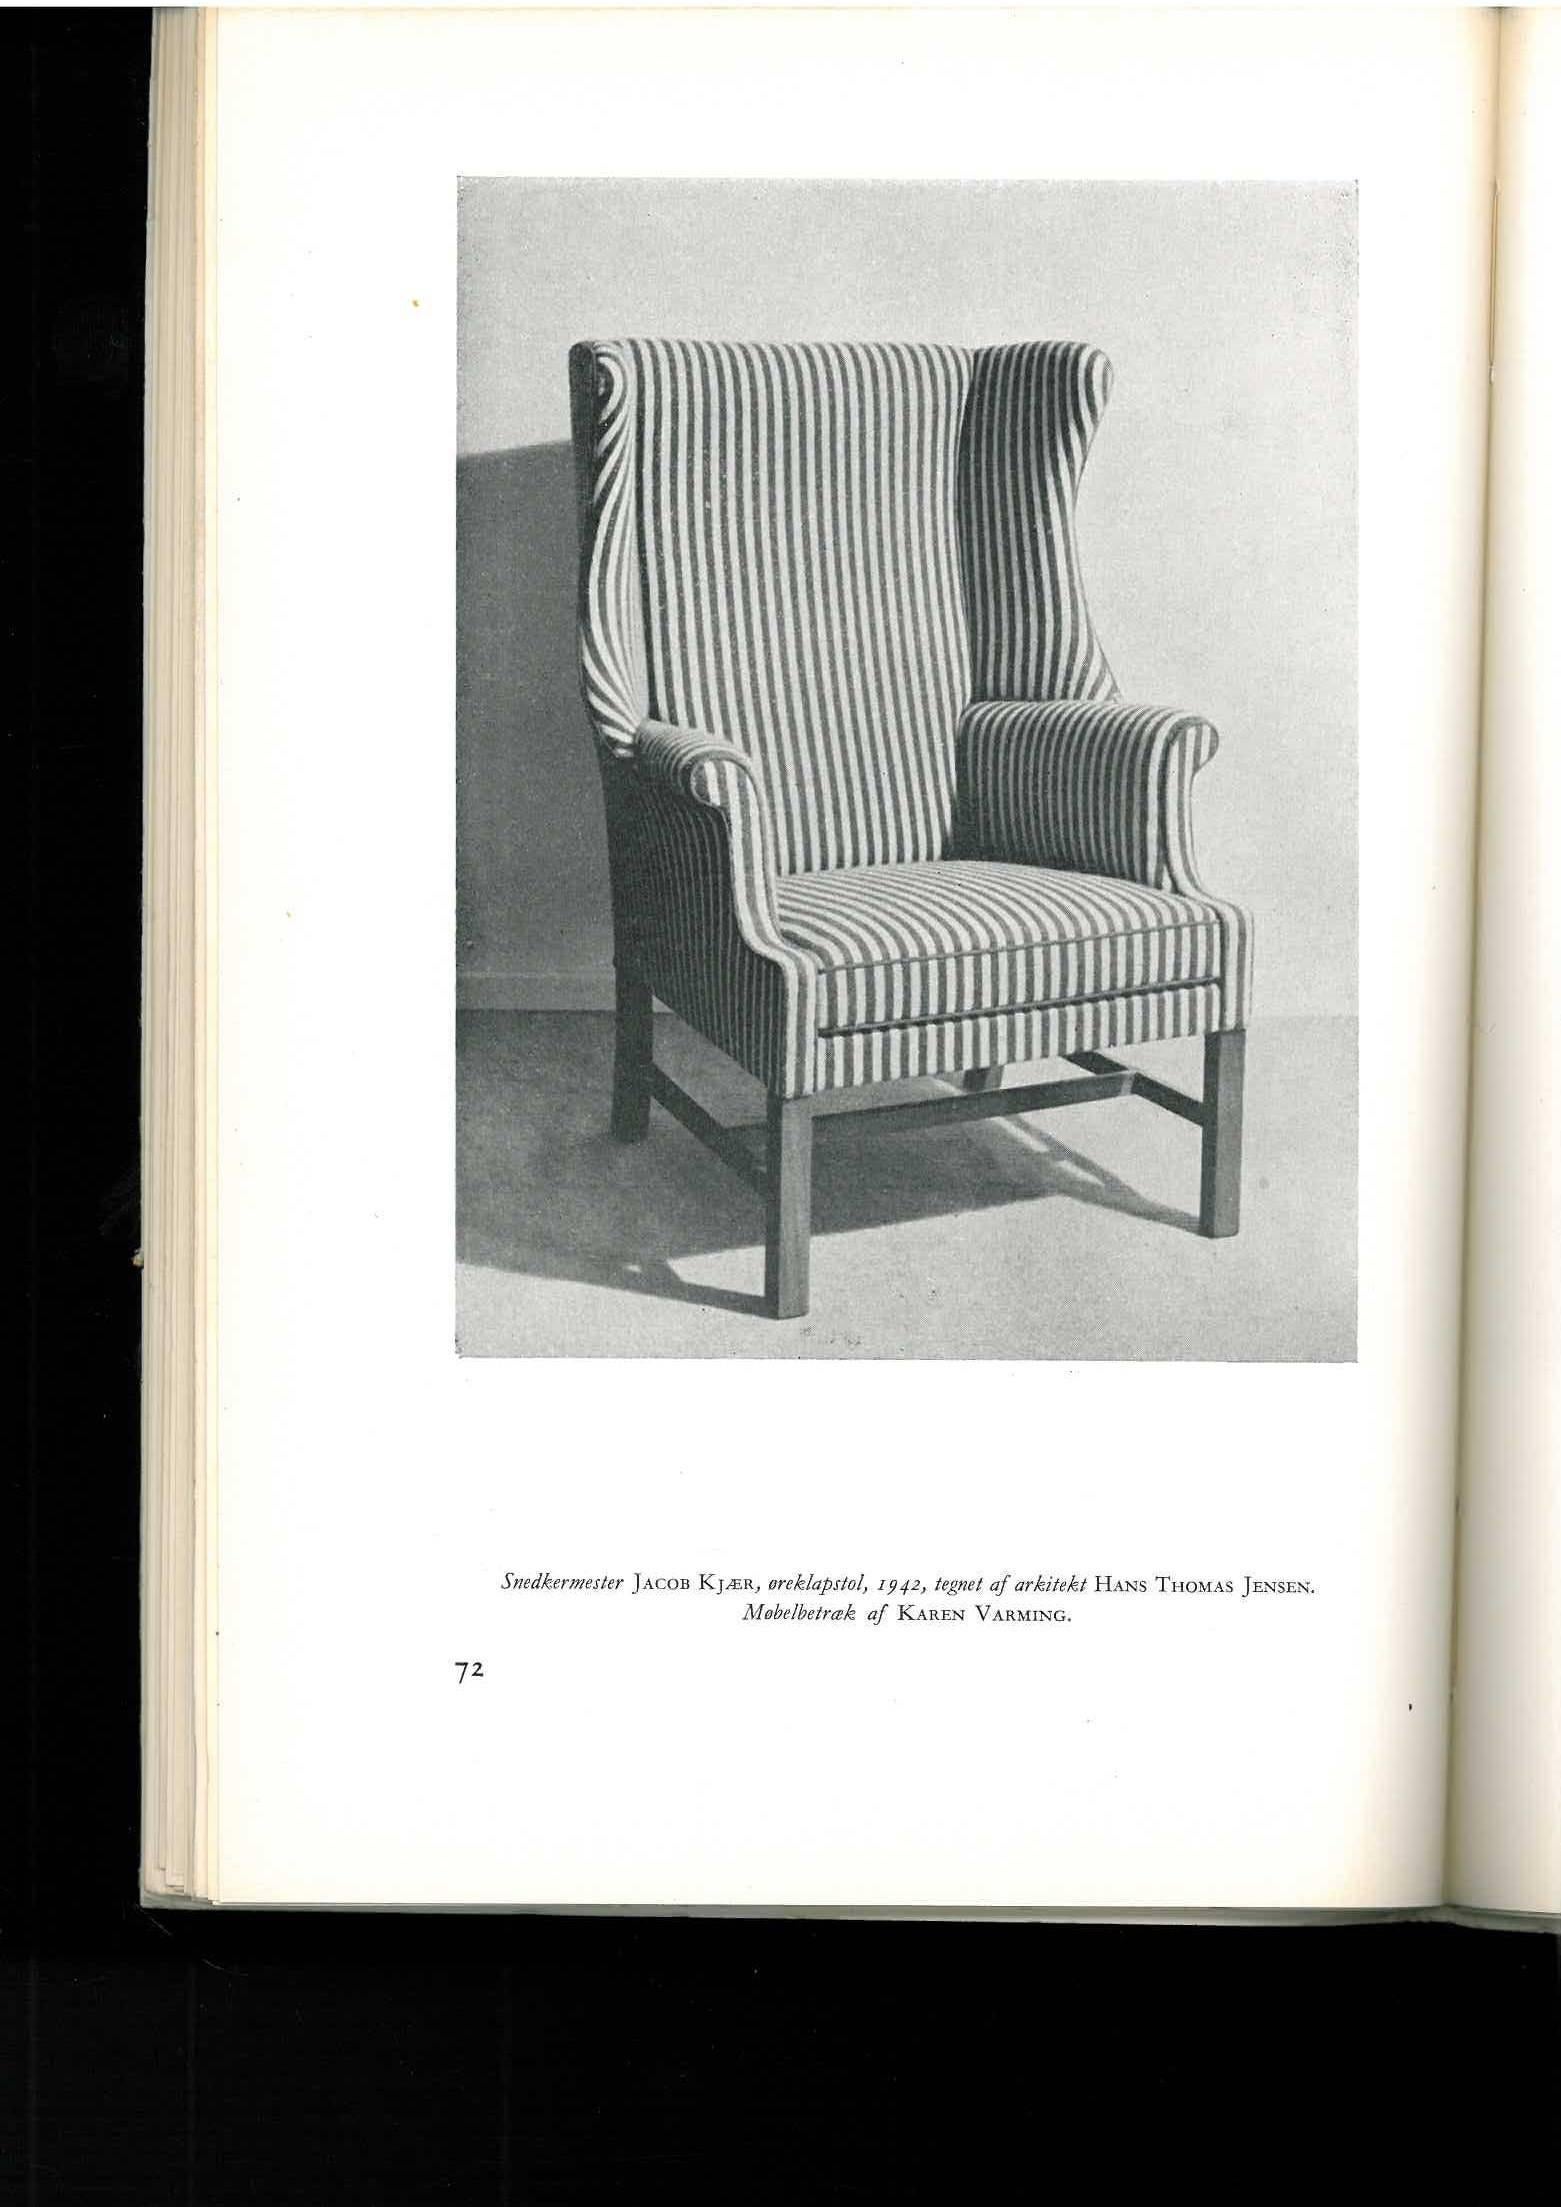 Dansk Mobel Kunst, Danish Furniture Design 'Book' 1